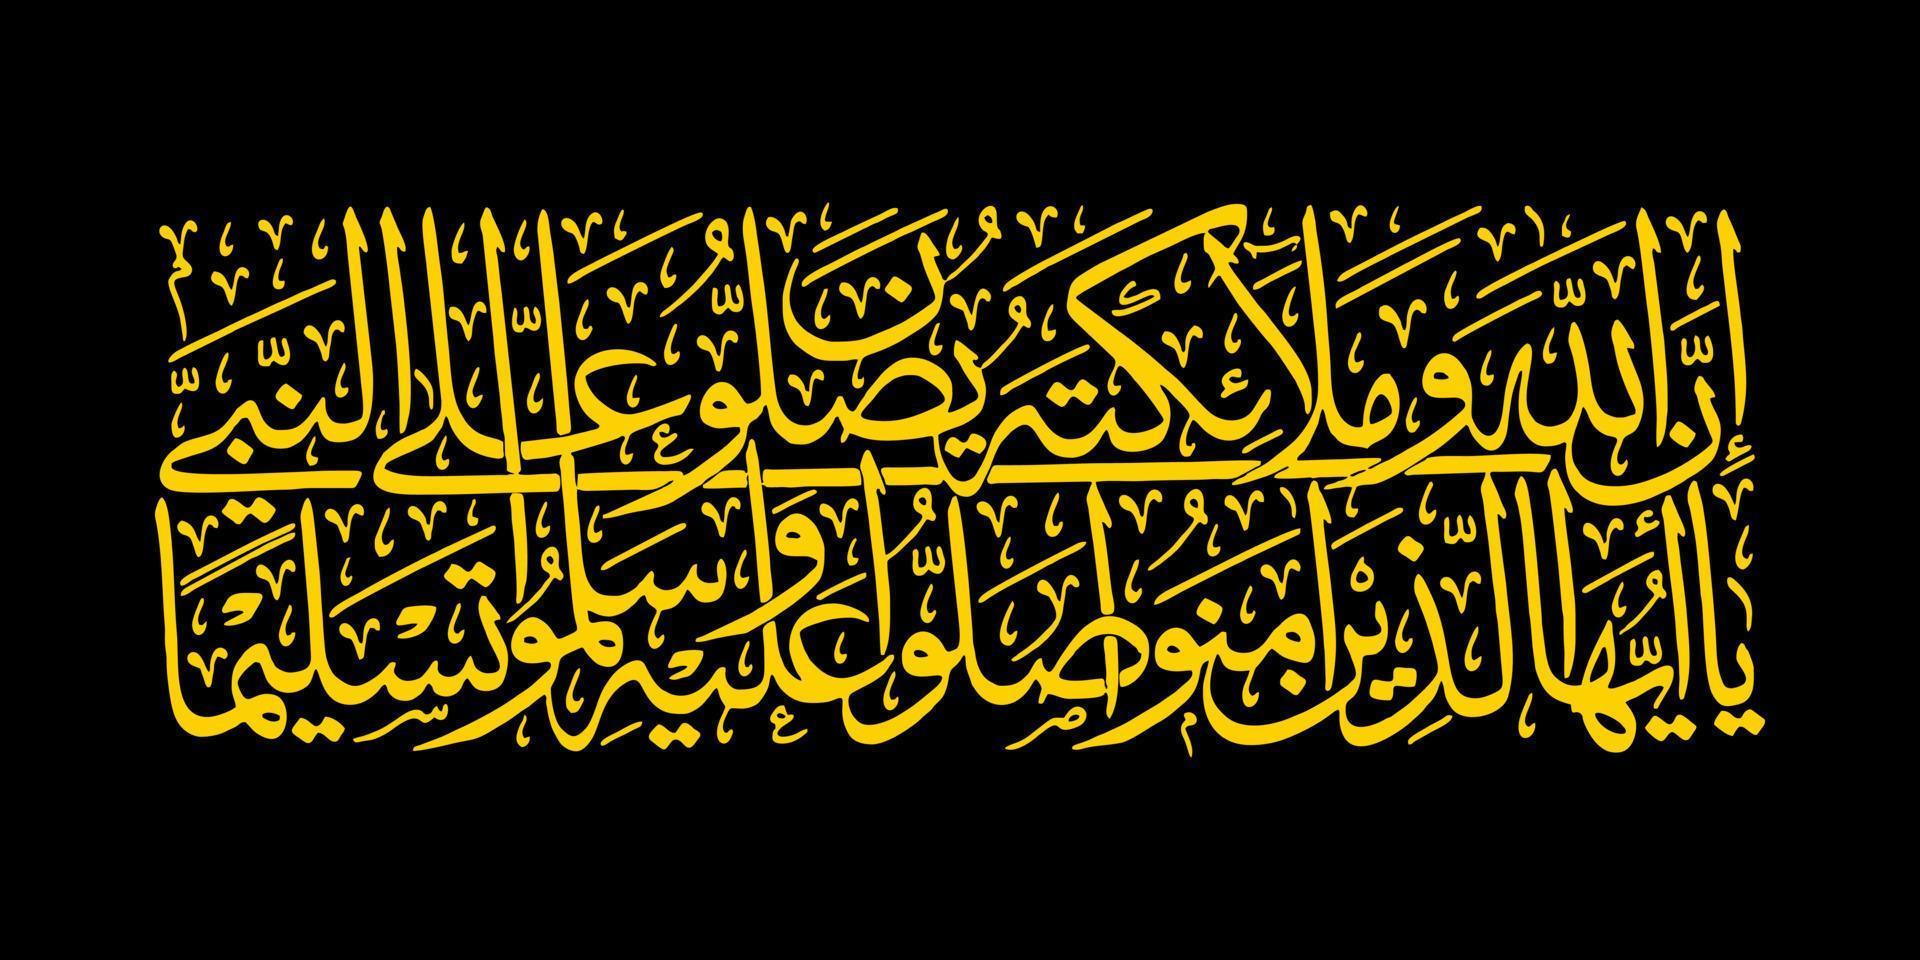 caligrafía árabe, quran surah al ahzab verso 56, traducción verdaderamente allah y sus ángeles oran por el profeta. o ustedes que creen salawat ustedes por el profeta y lo saludan con pleno respeto vector